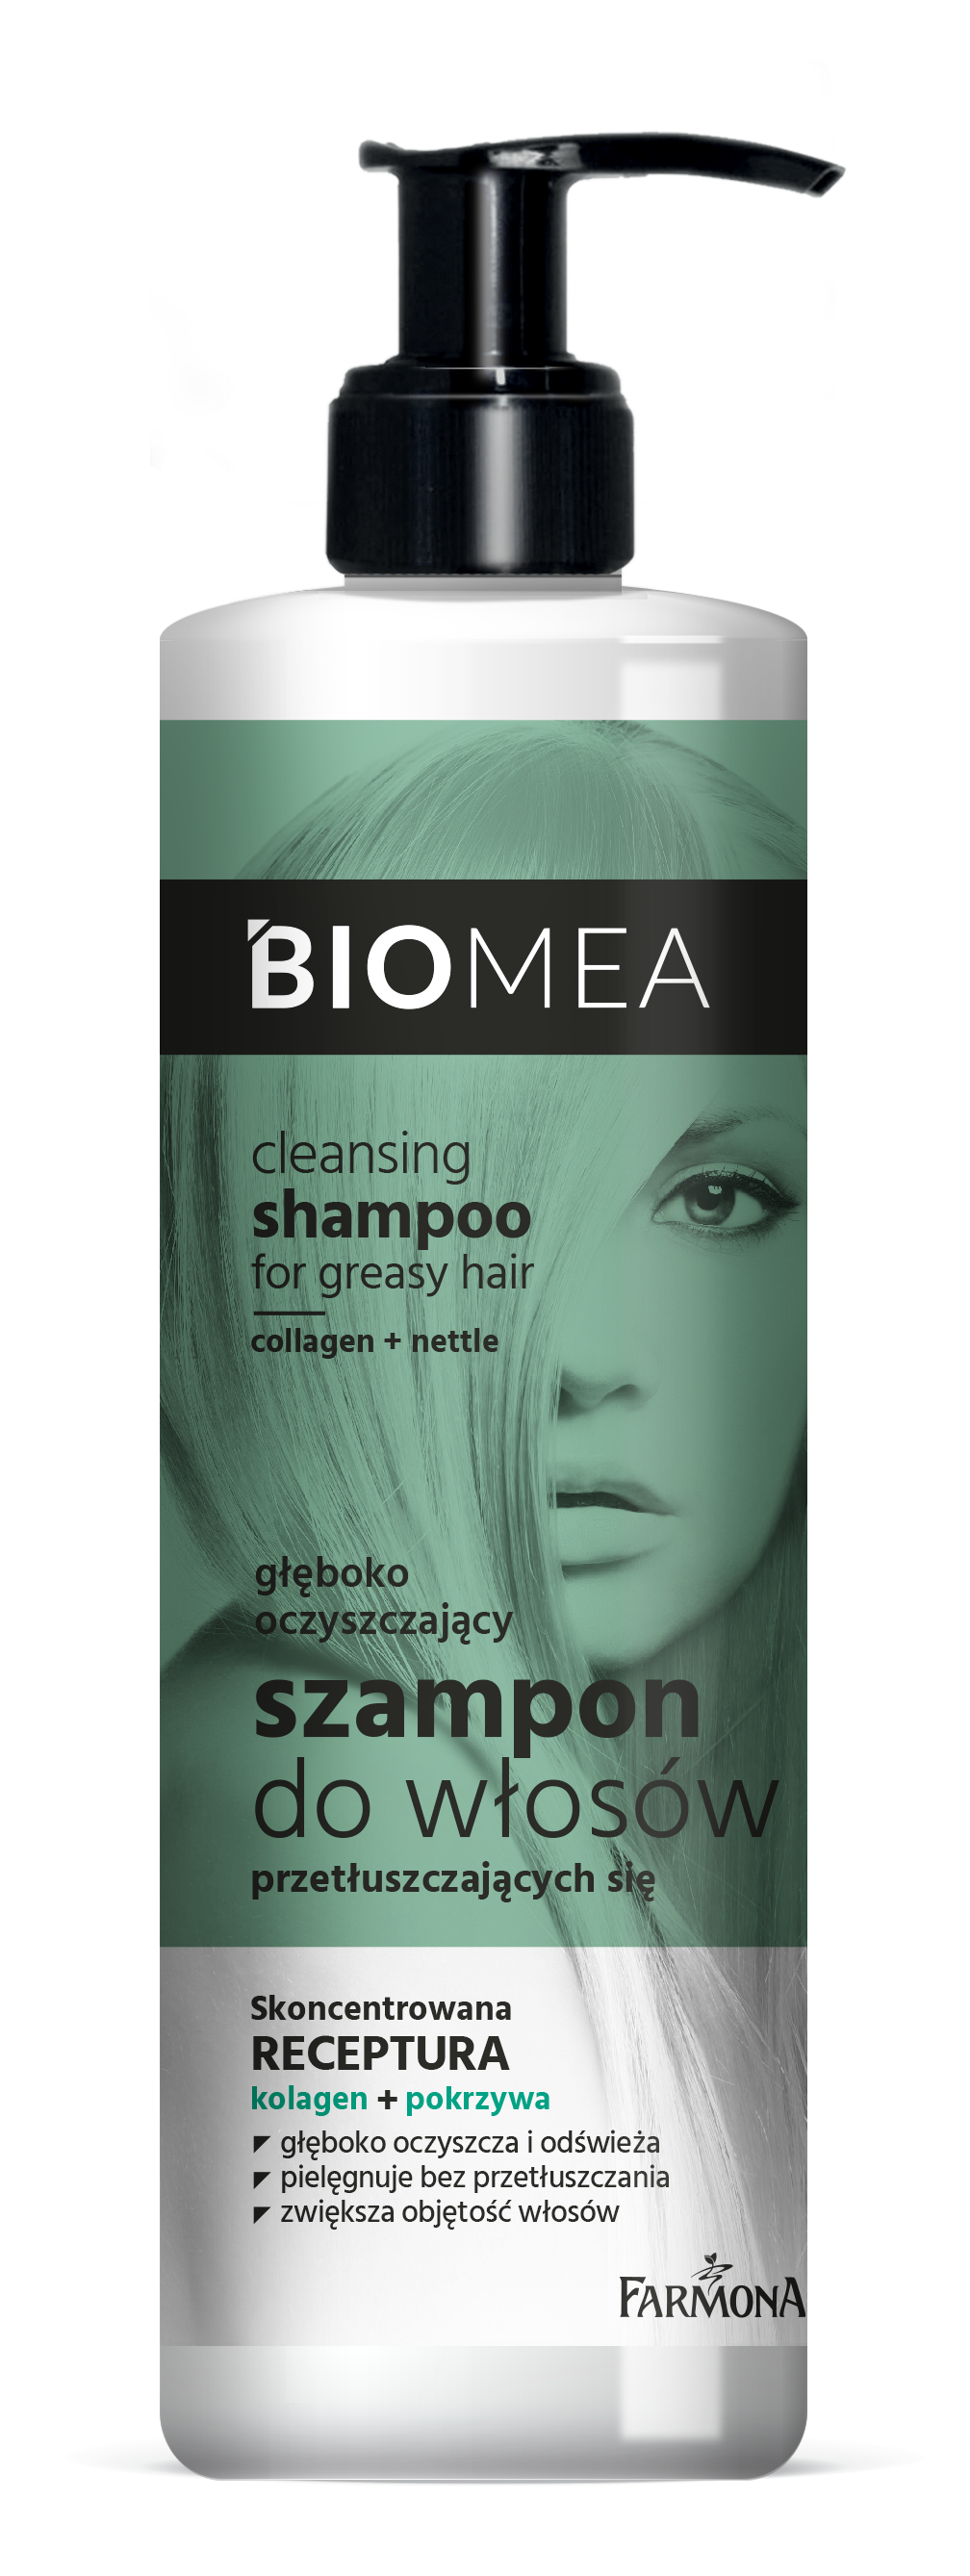 BIOMEA_szampon oczyszczający400ml - Copy